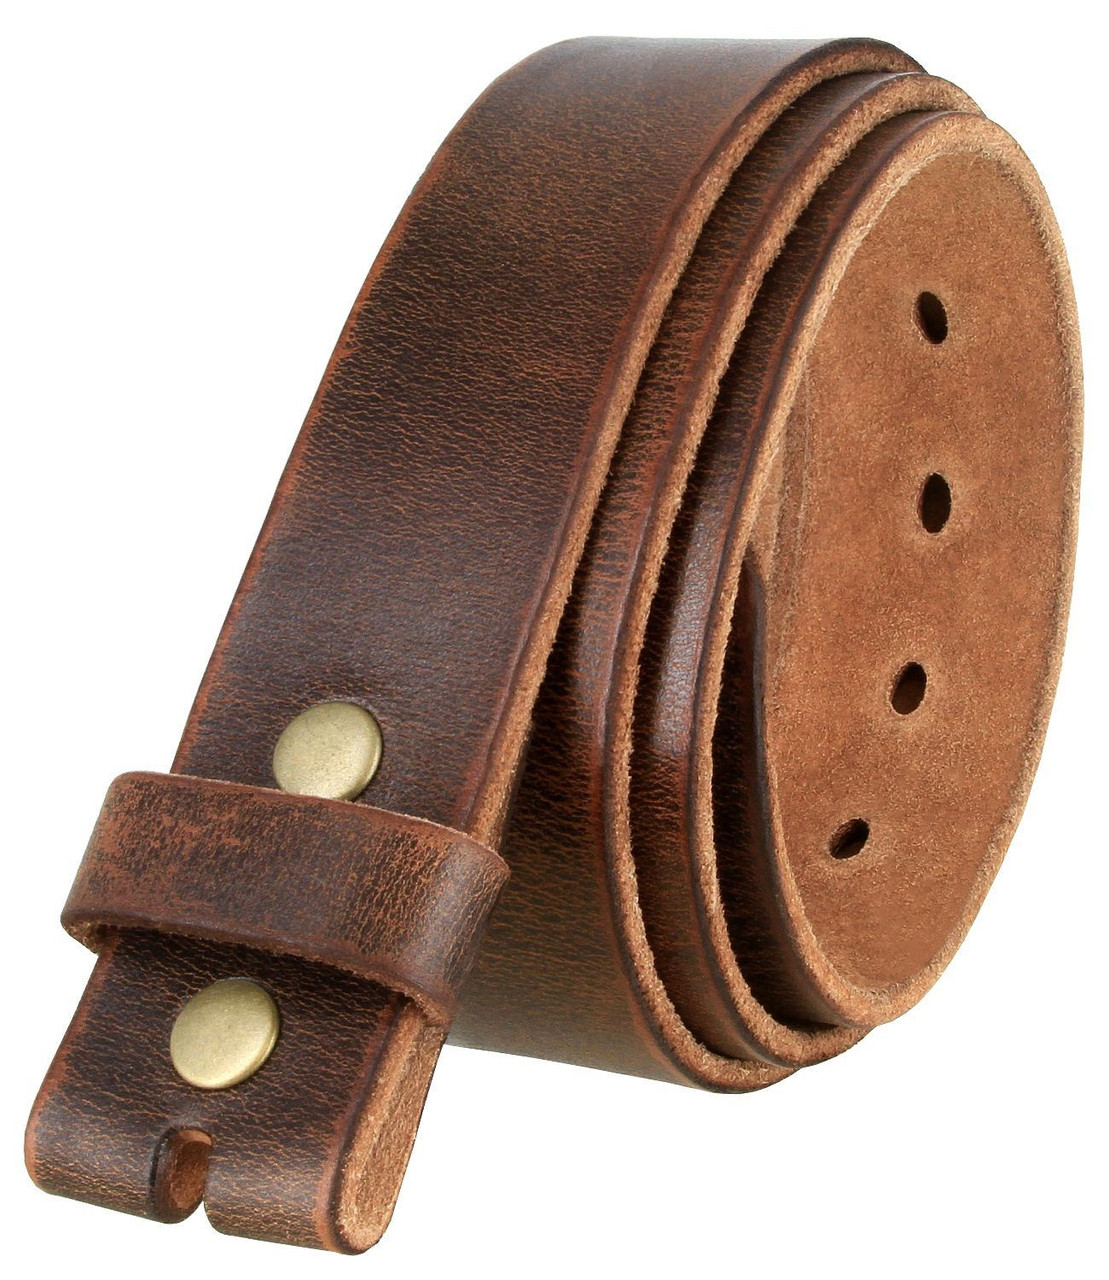 Men's 38mm Classic Reversible Belt in Brown